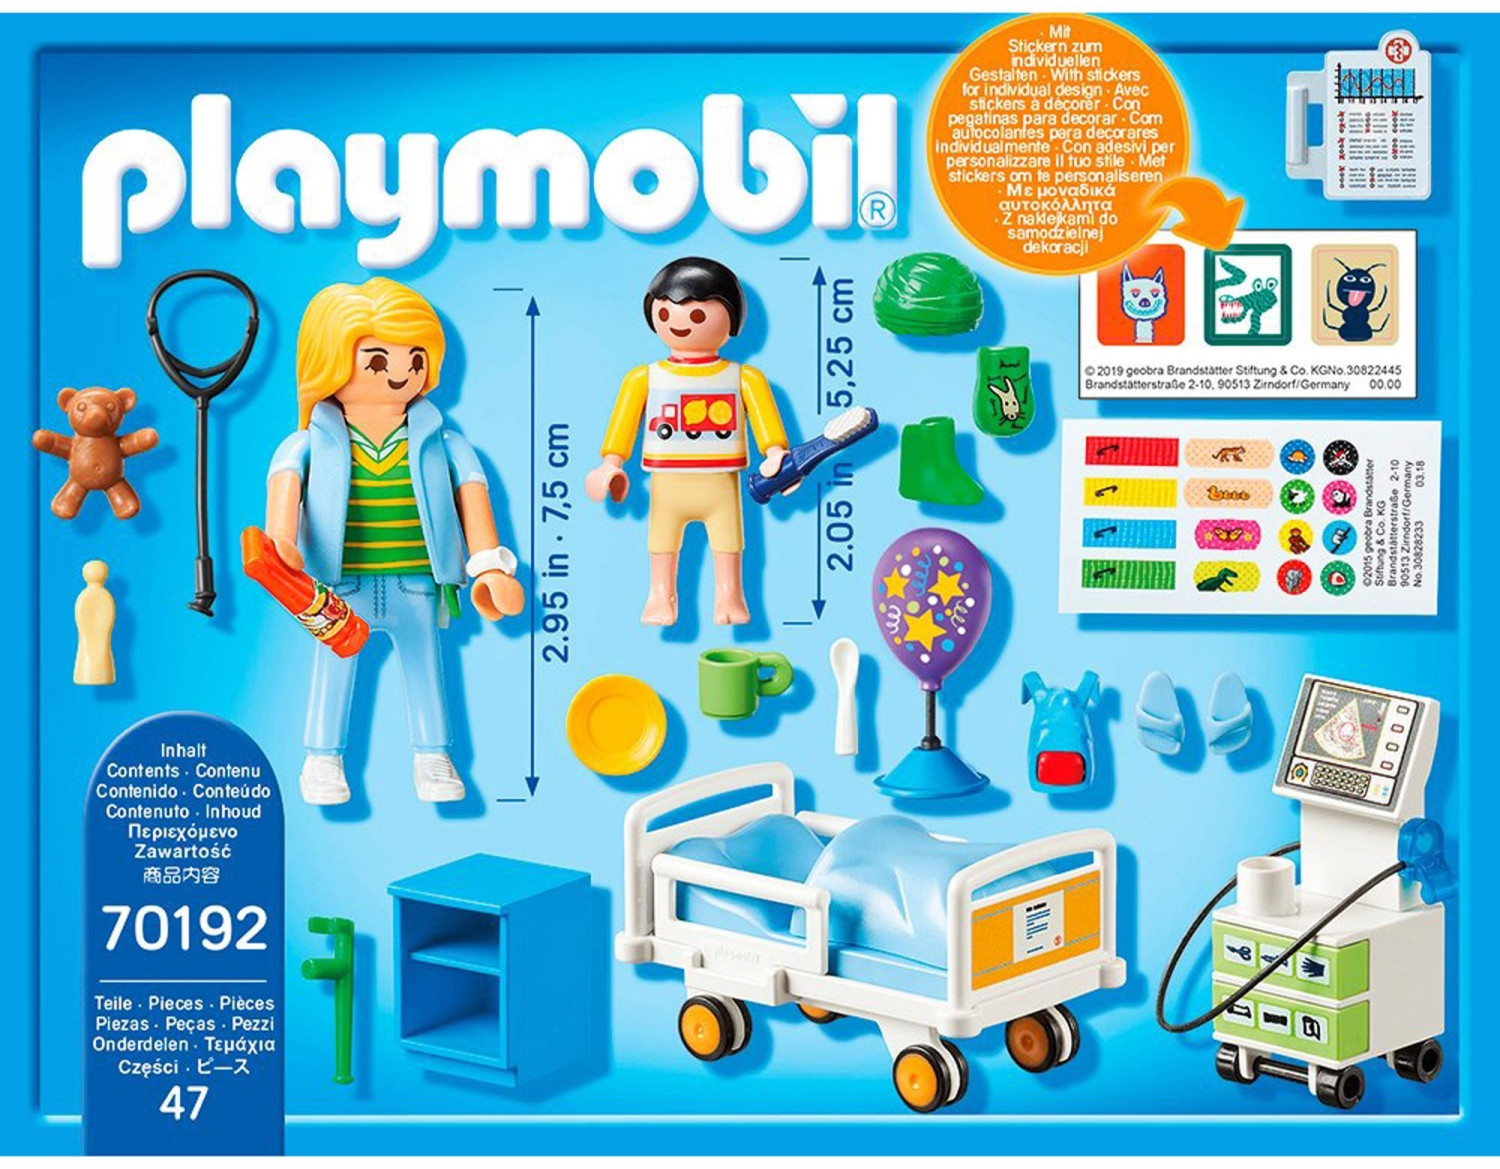 Playmobil City Life - Chambre d'enfant avec médecin